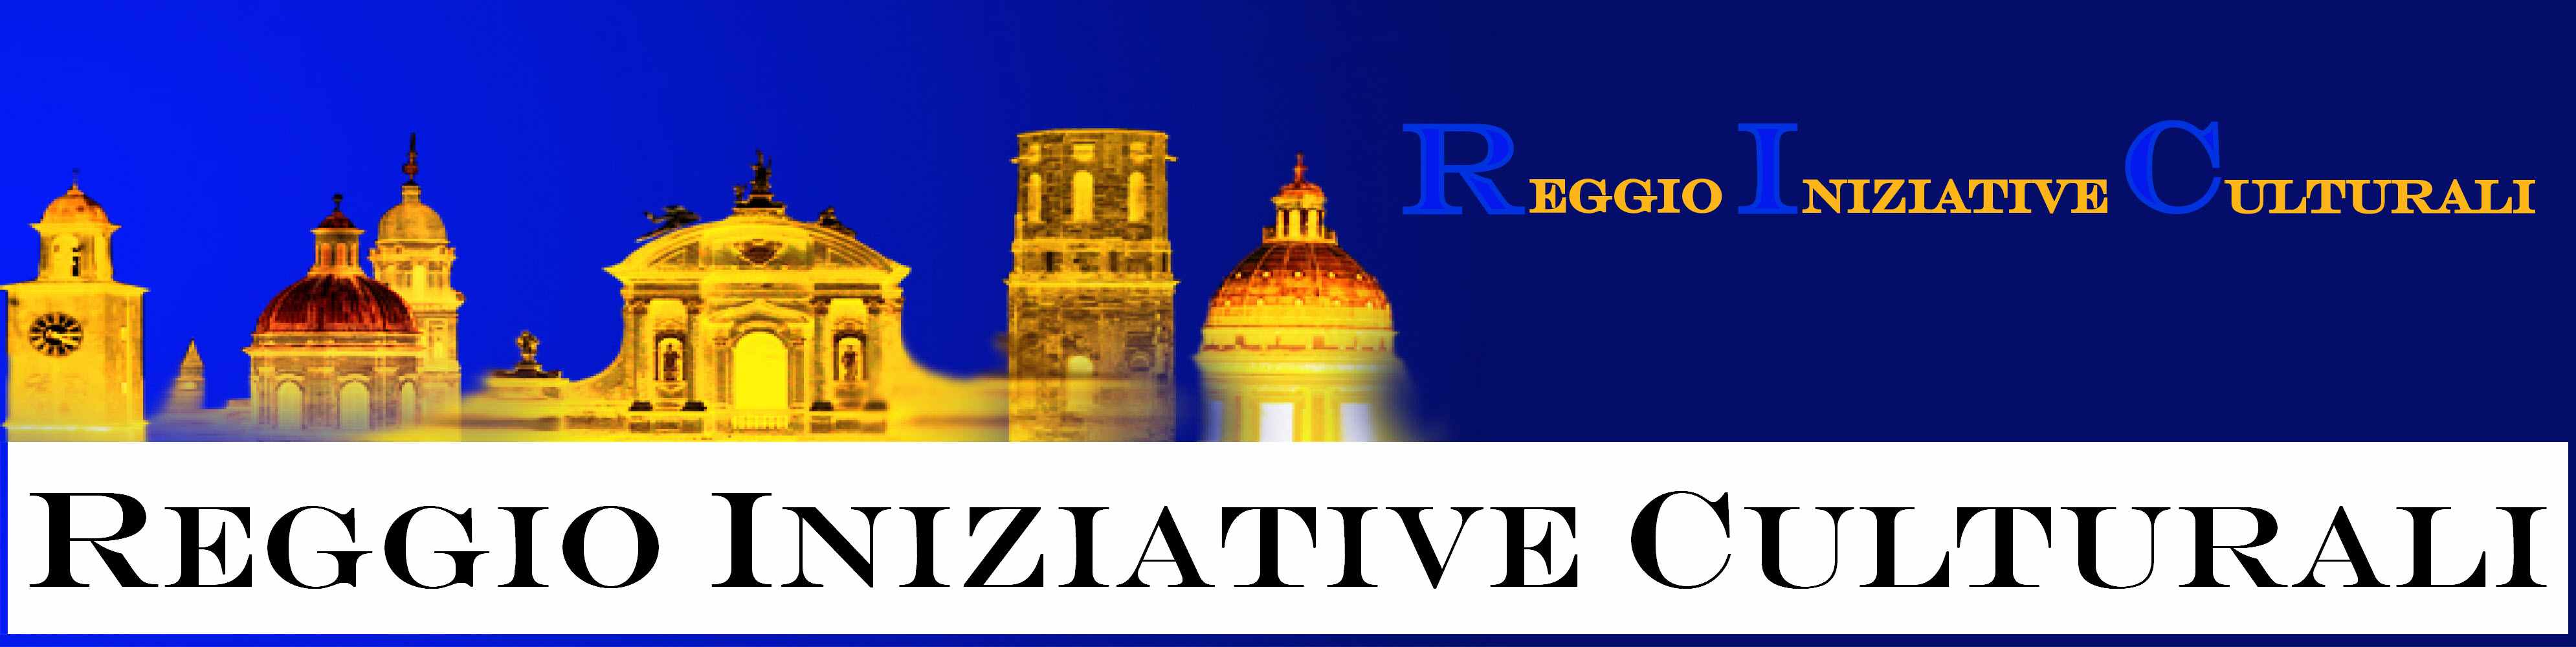 Reggio Iniziative Culturali